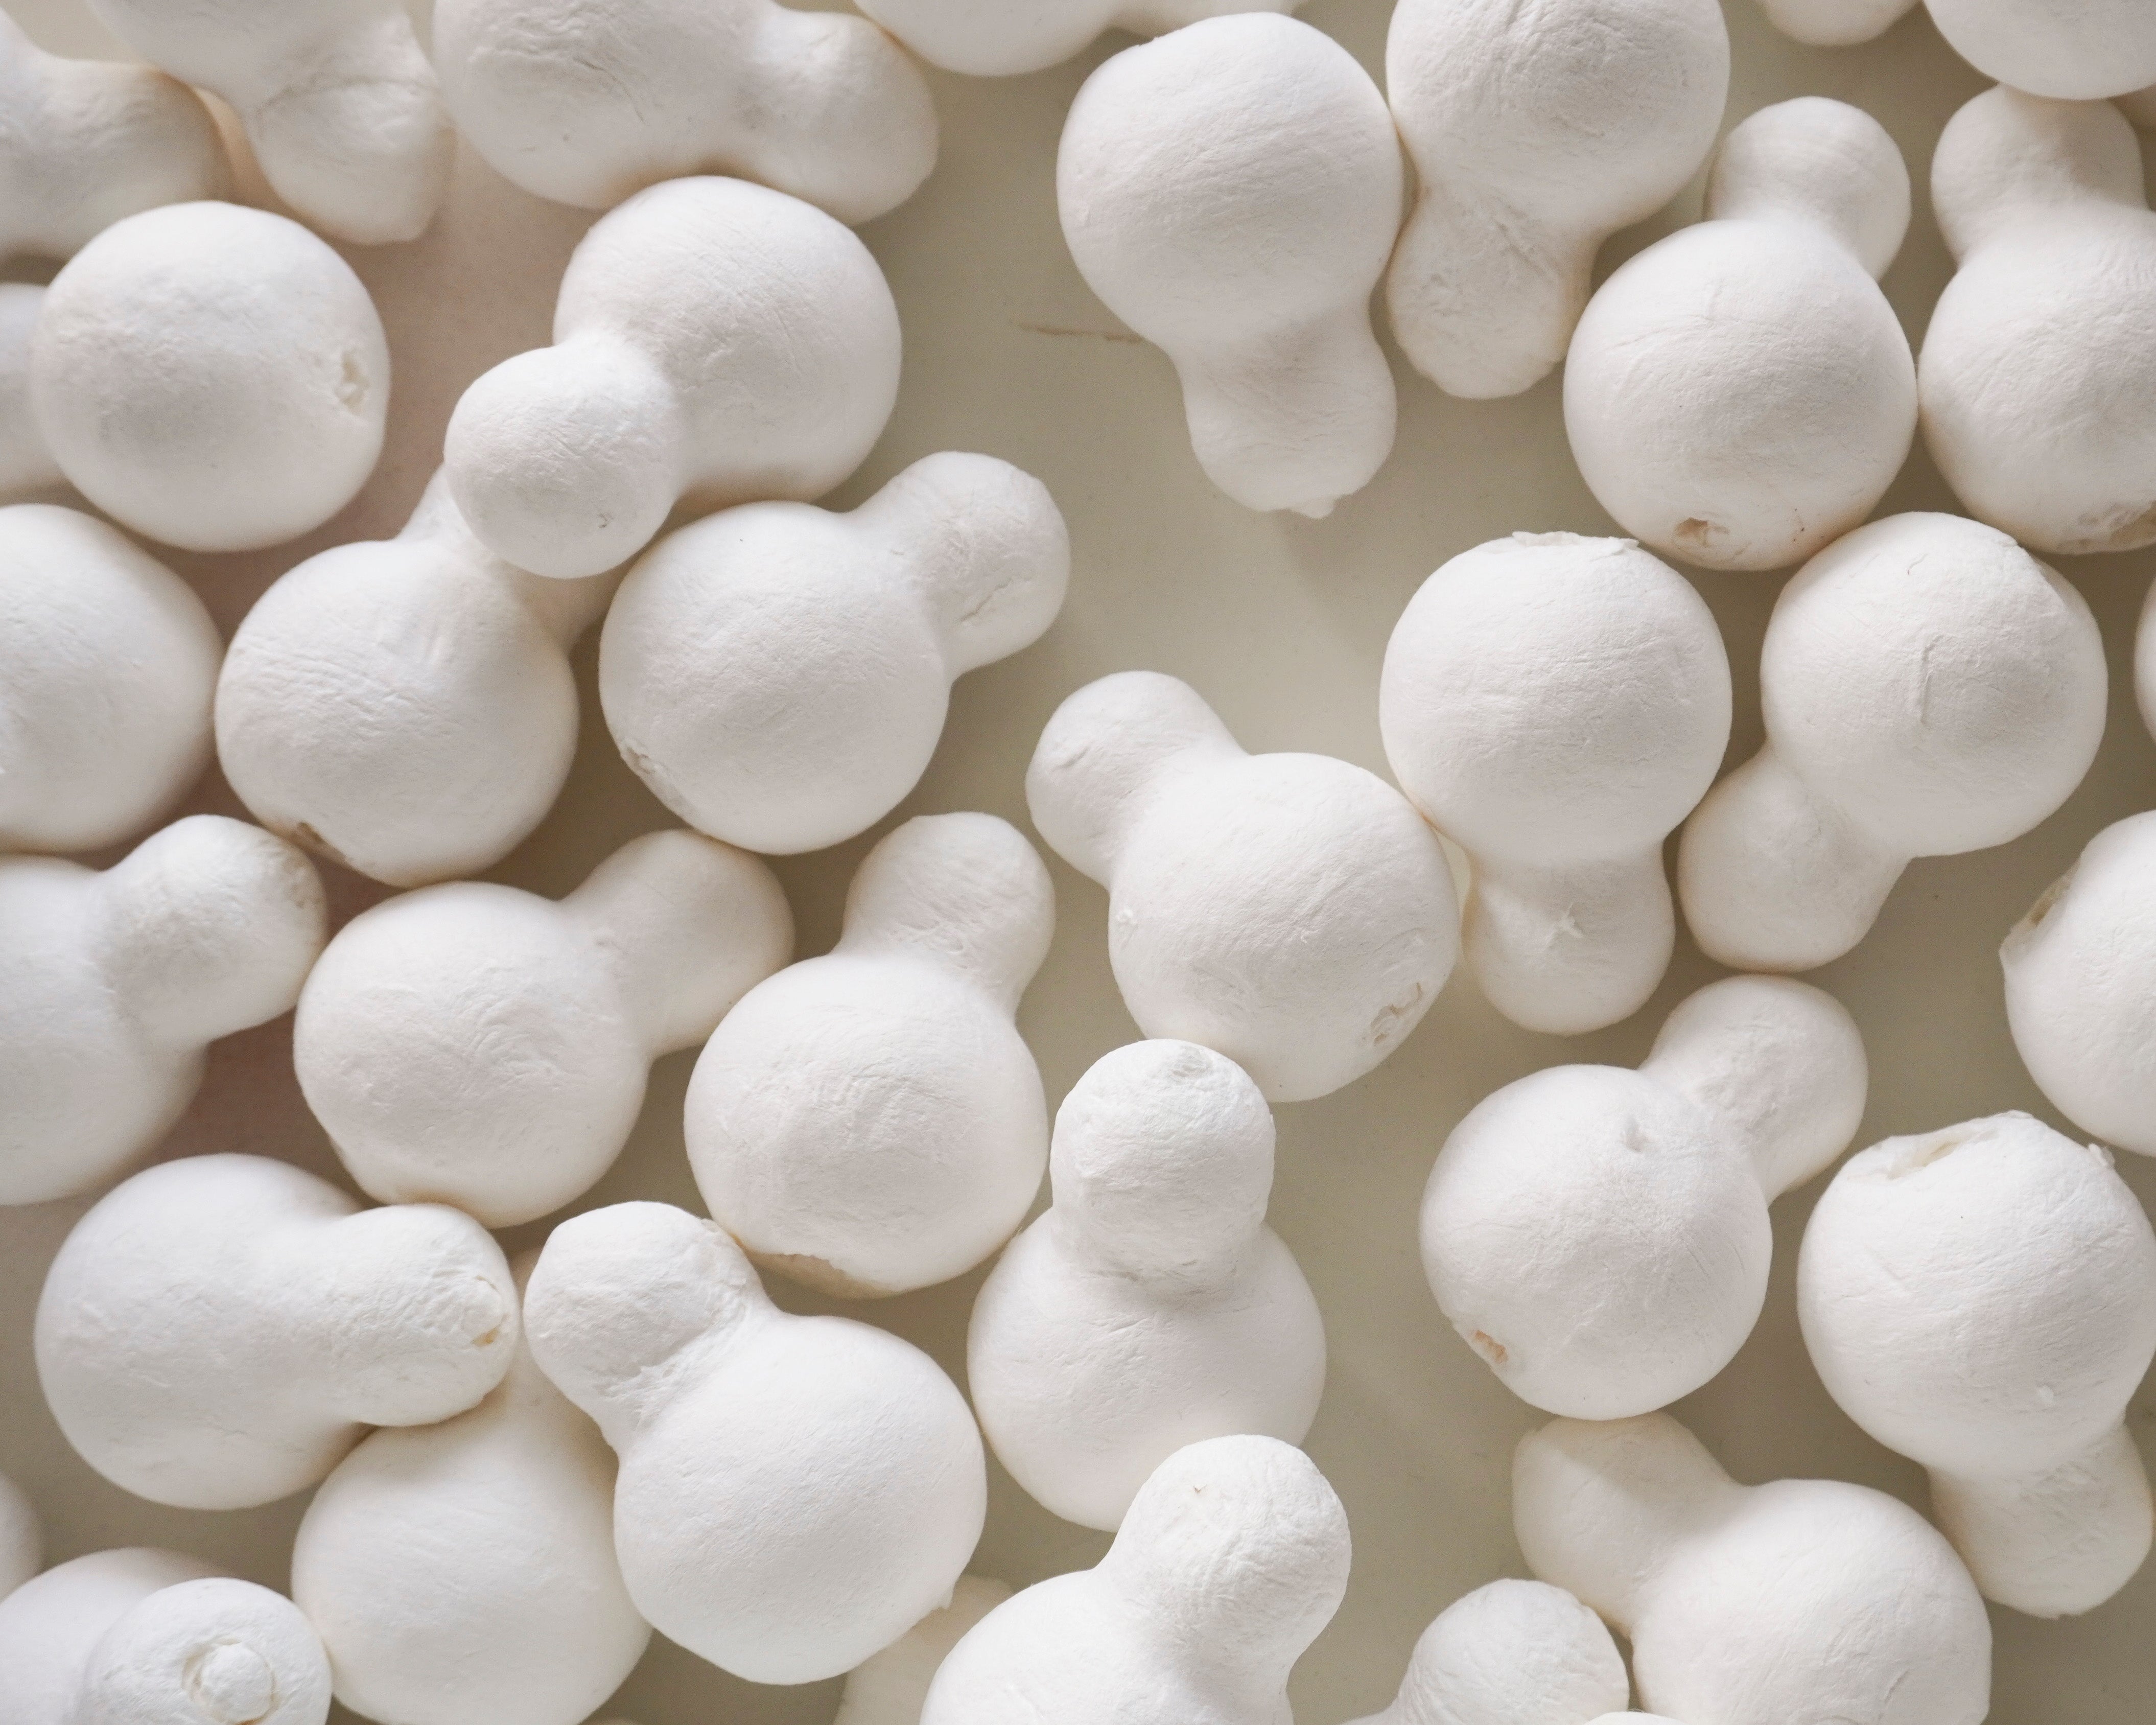 B-Grade Spun Cotton Snowman Forms - Factory Flaw, 30 Pcs.